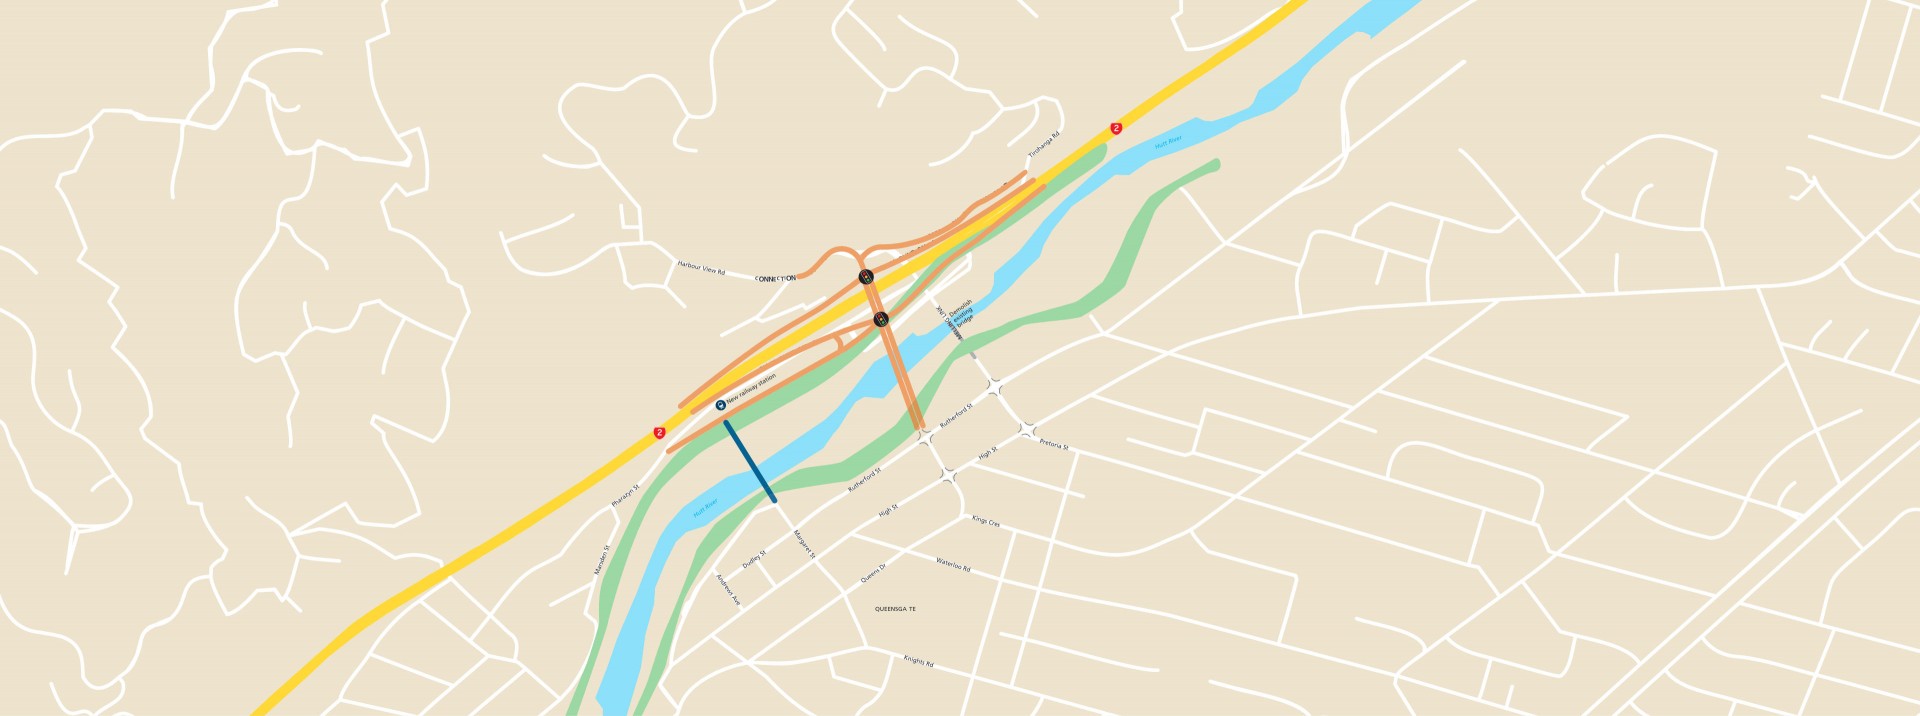 Transport Map Lower Hutt2x v2